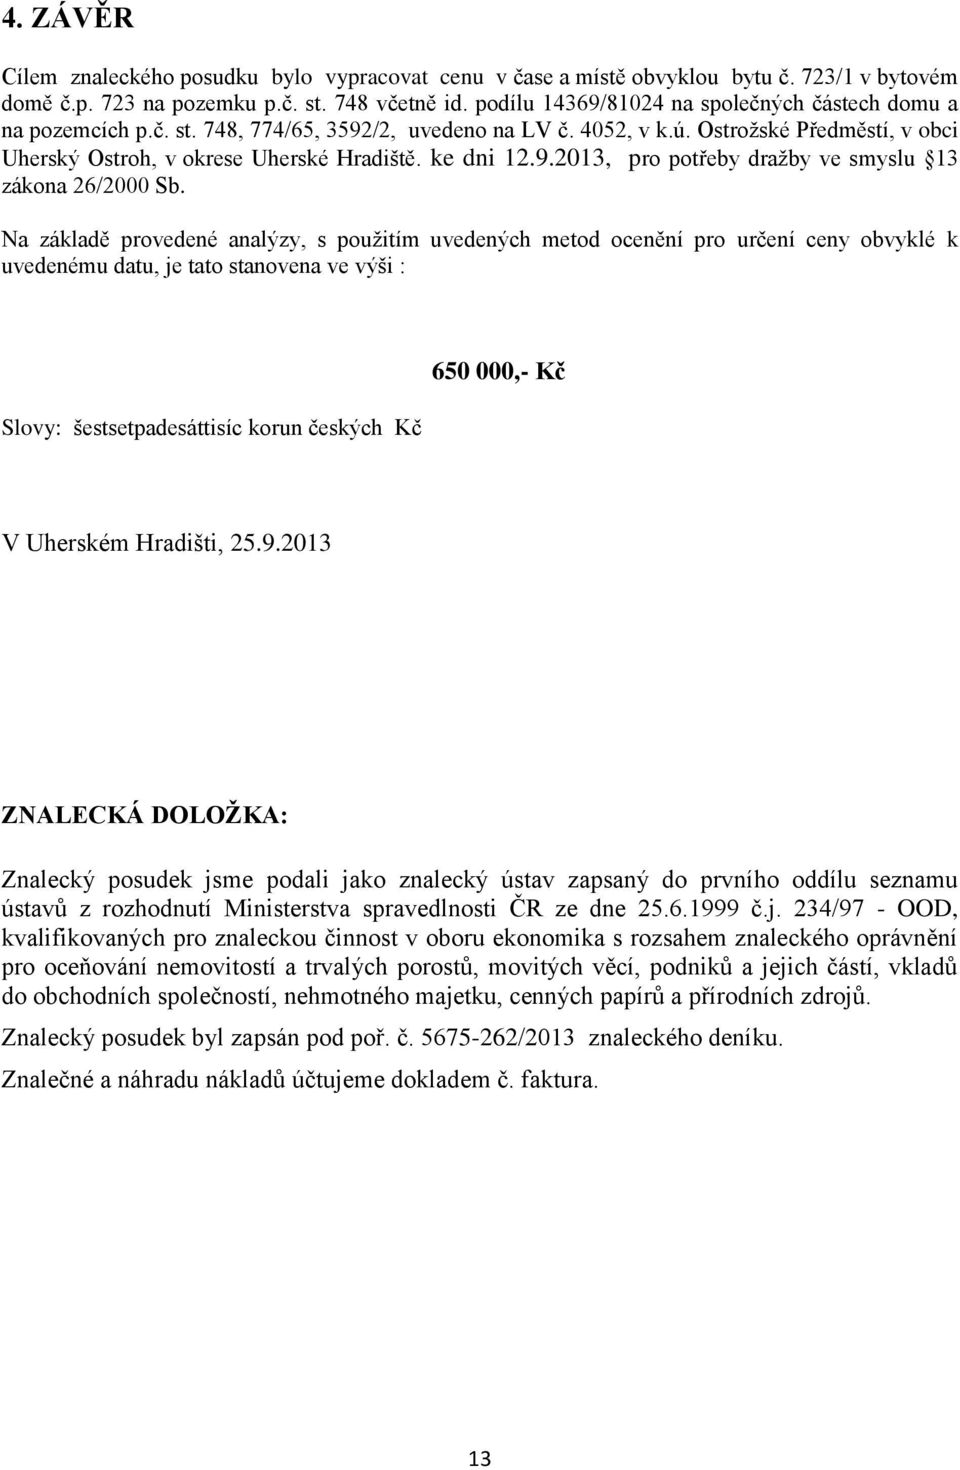 ke dni 12.9.2013, pro potřeby draţby ve smyslu 13 zákona 26/2000 Sb.